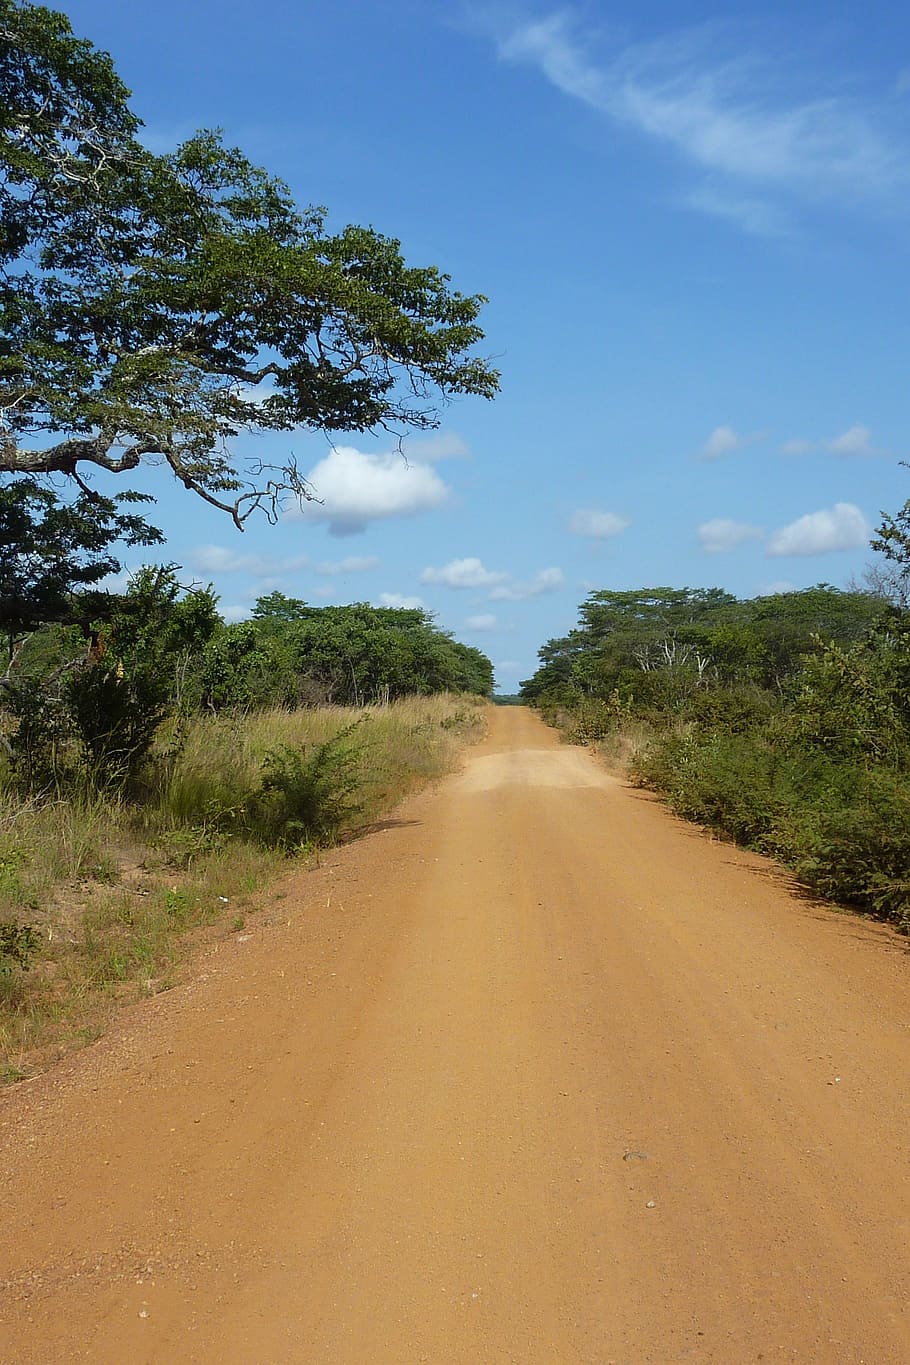 Tanzânia, estrada, poeira, céu, árvore, árvores, areia, o caminho a seguir, direção, plantar